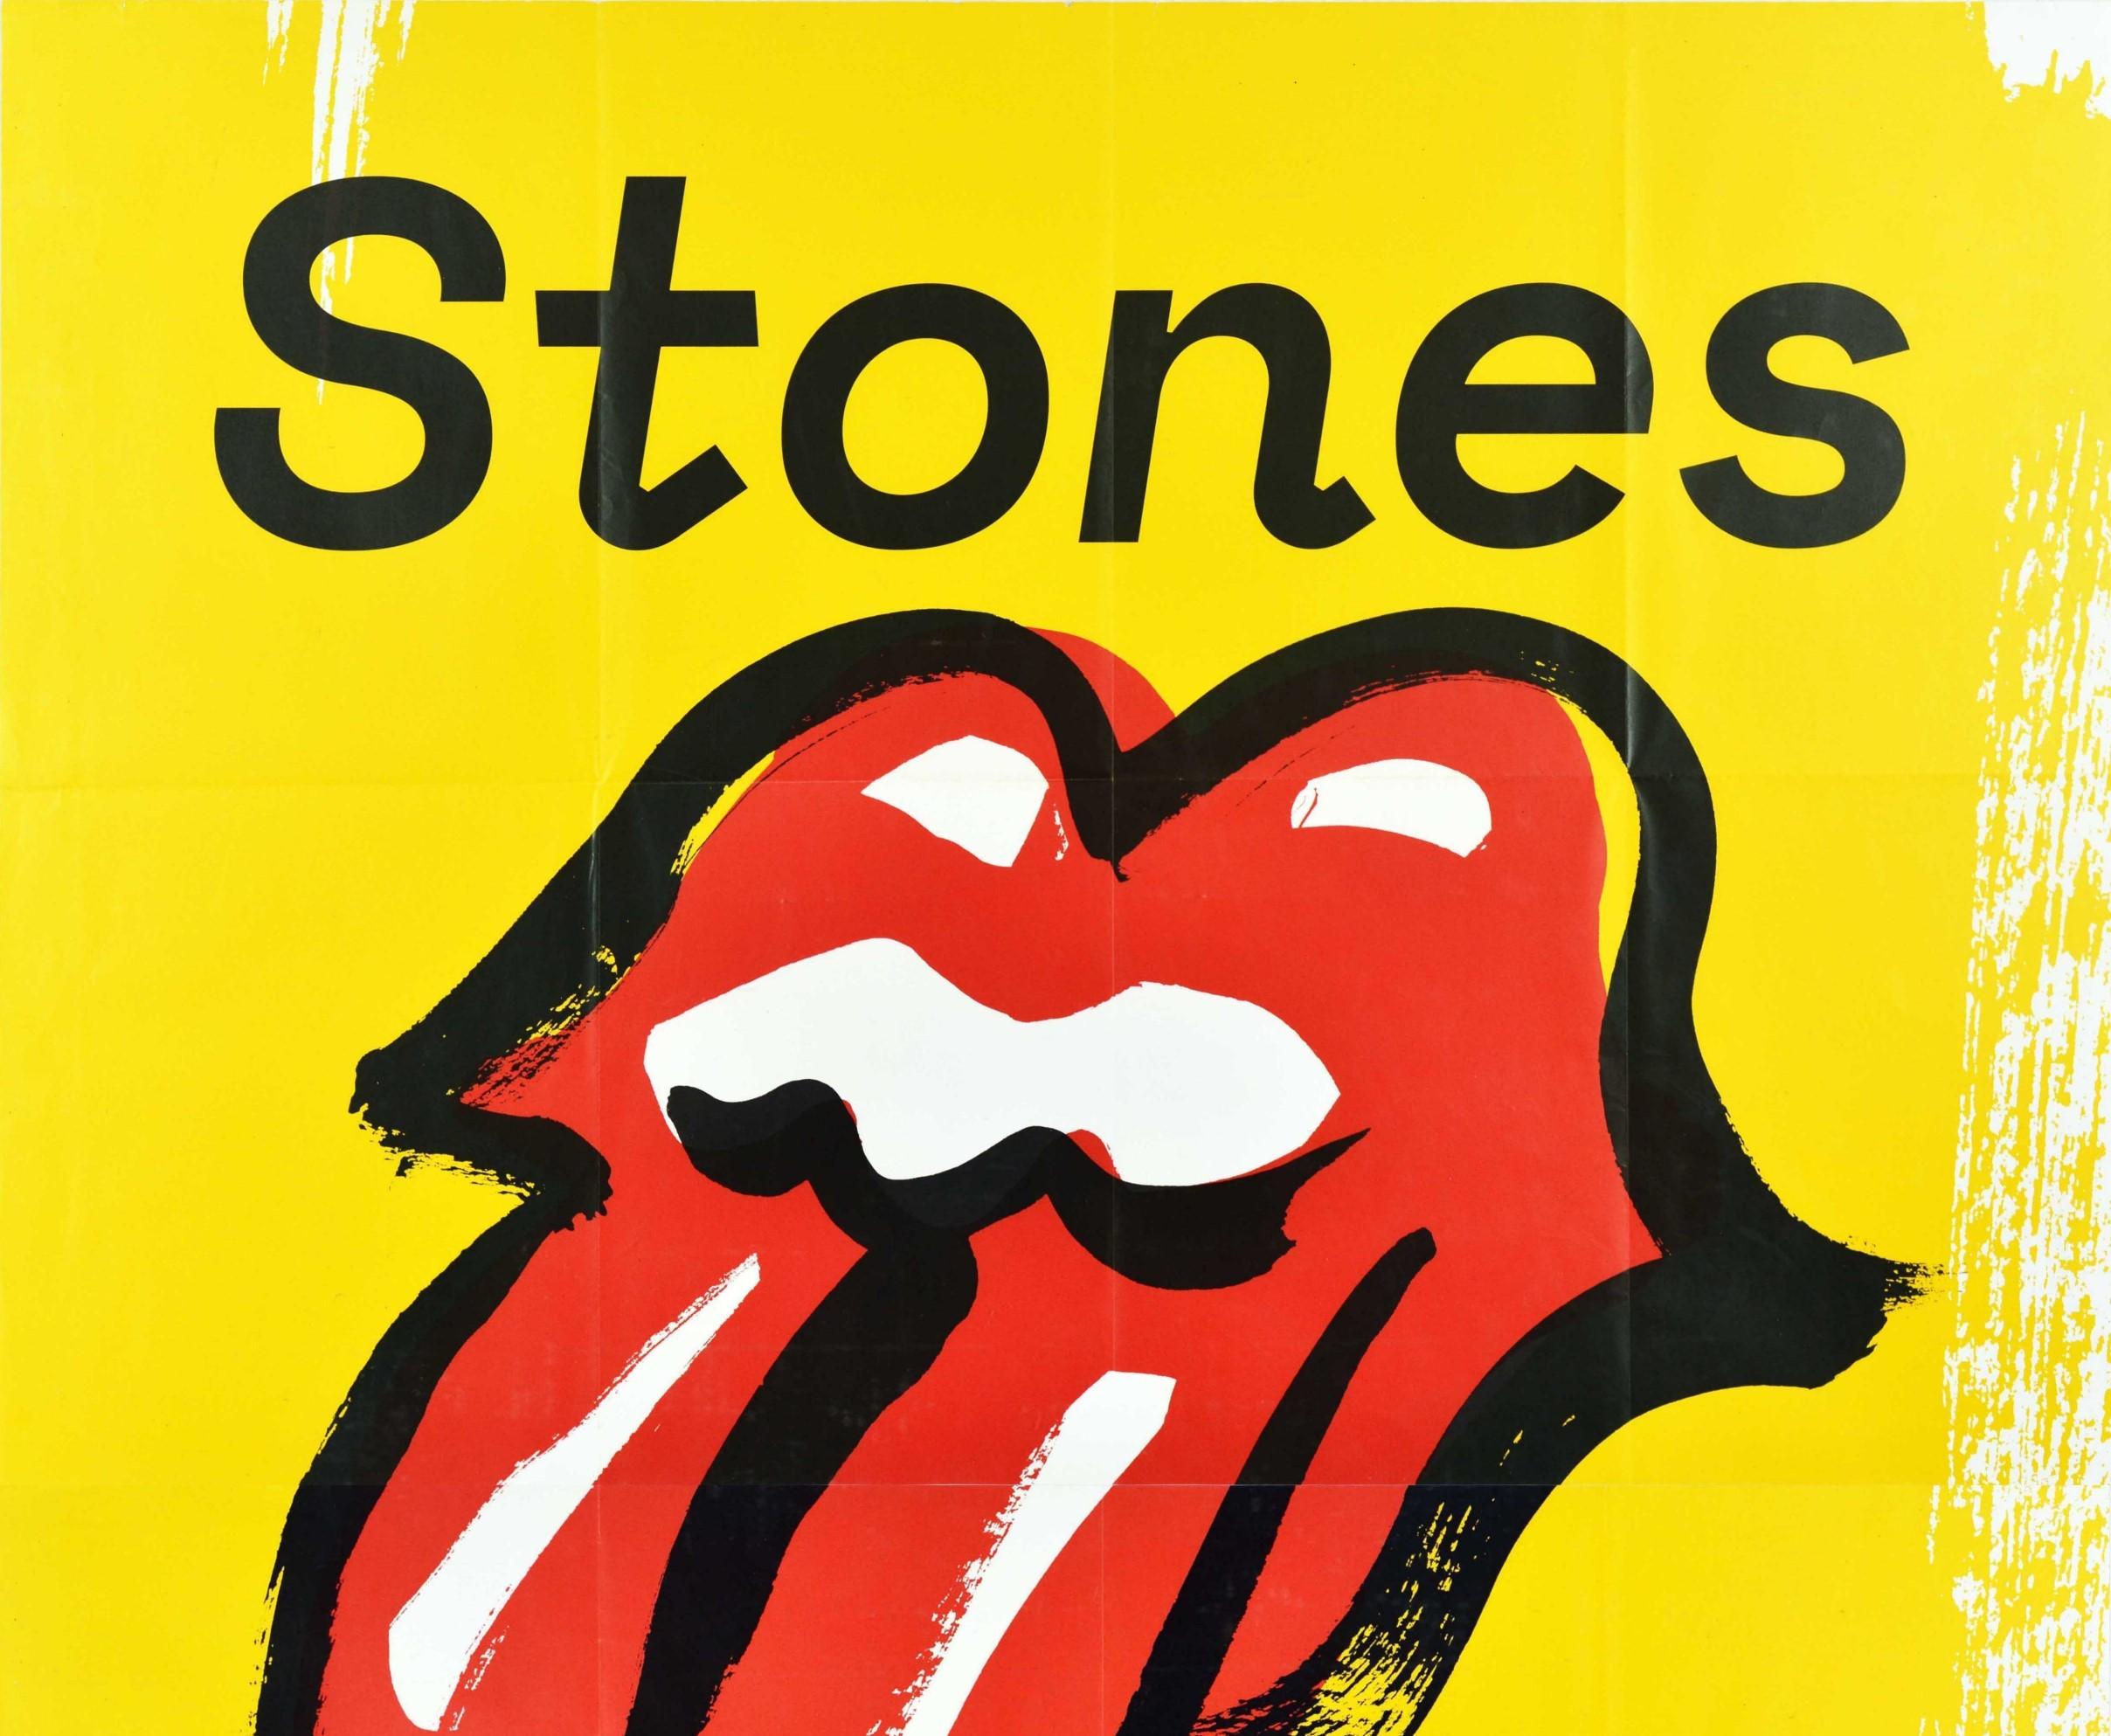 Original Musik-Konzertplakat für die Rolling Stones No Filter Tour Europe 2017, das ihren Auftritt im Olympiastadion München am 12. September 2017 bewirbt. Es zeigt das ikonische Rolling Stones-Logo (auch bekannt als Hot Lips-Logo), das 1970 von dem